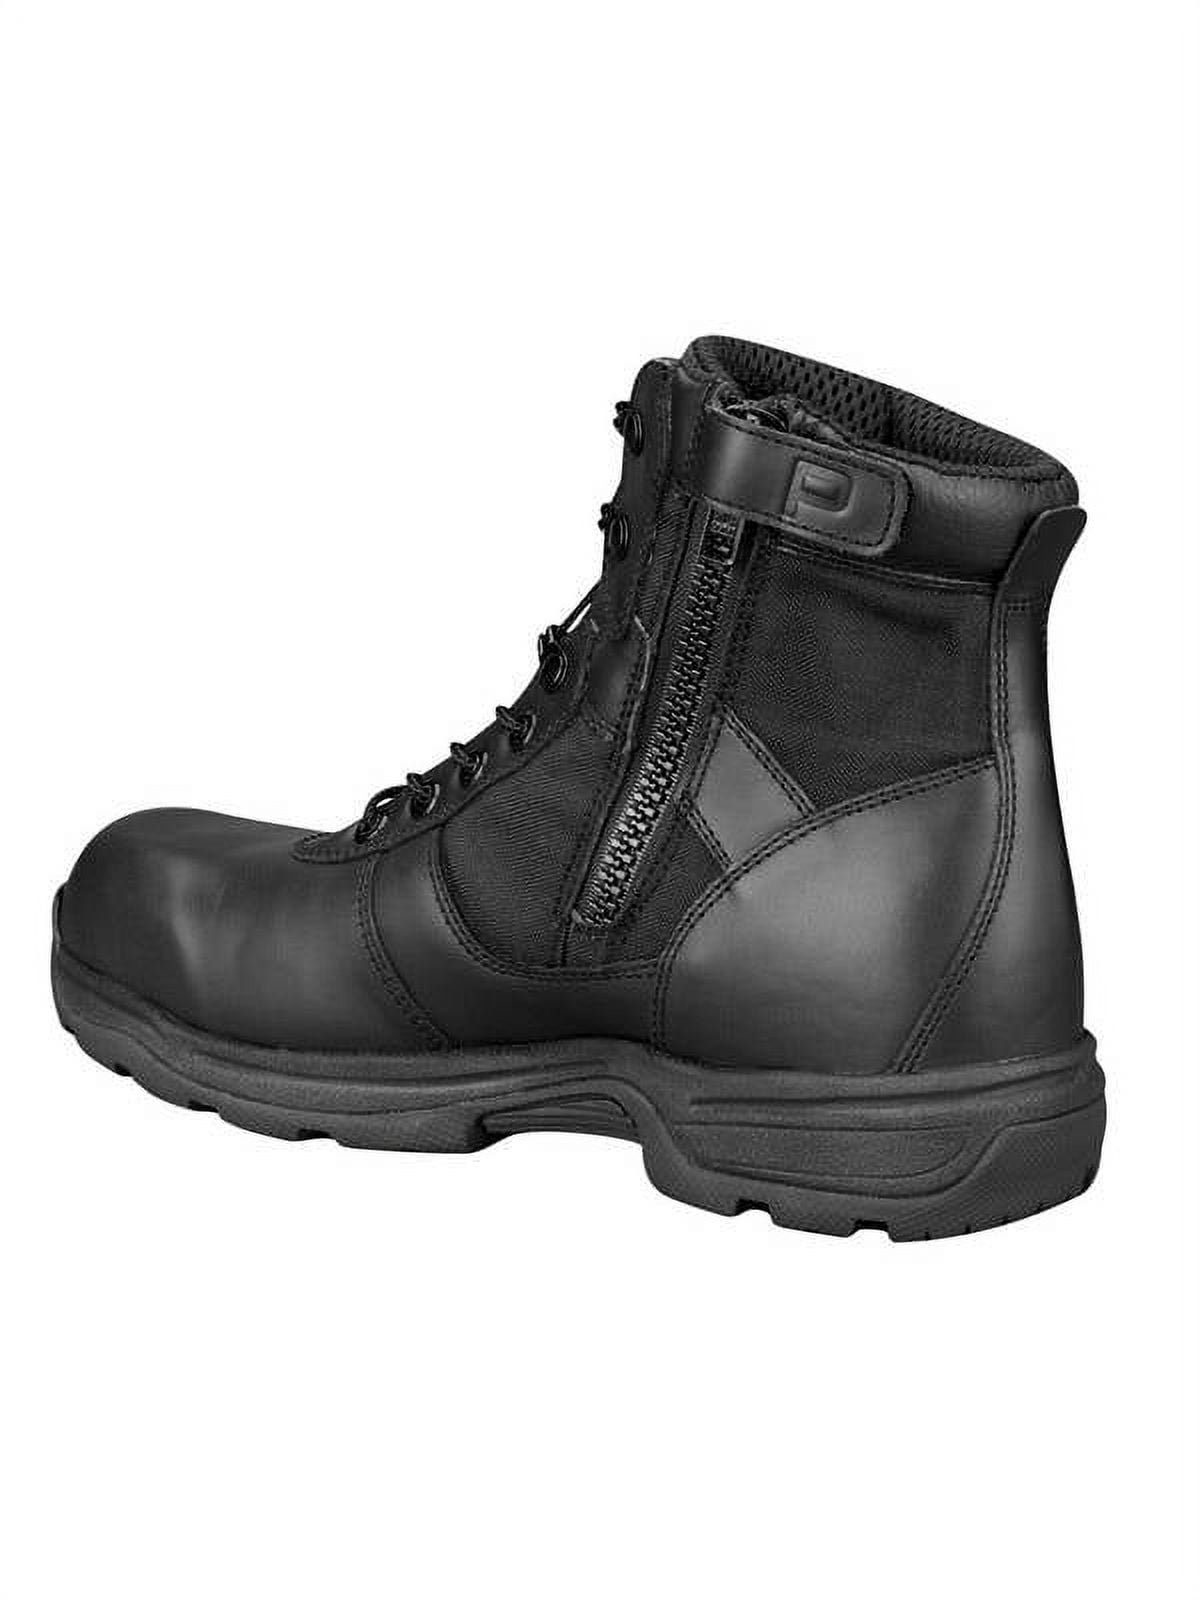 Series 100 6 Side Zip Tactical Boot